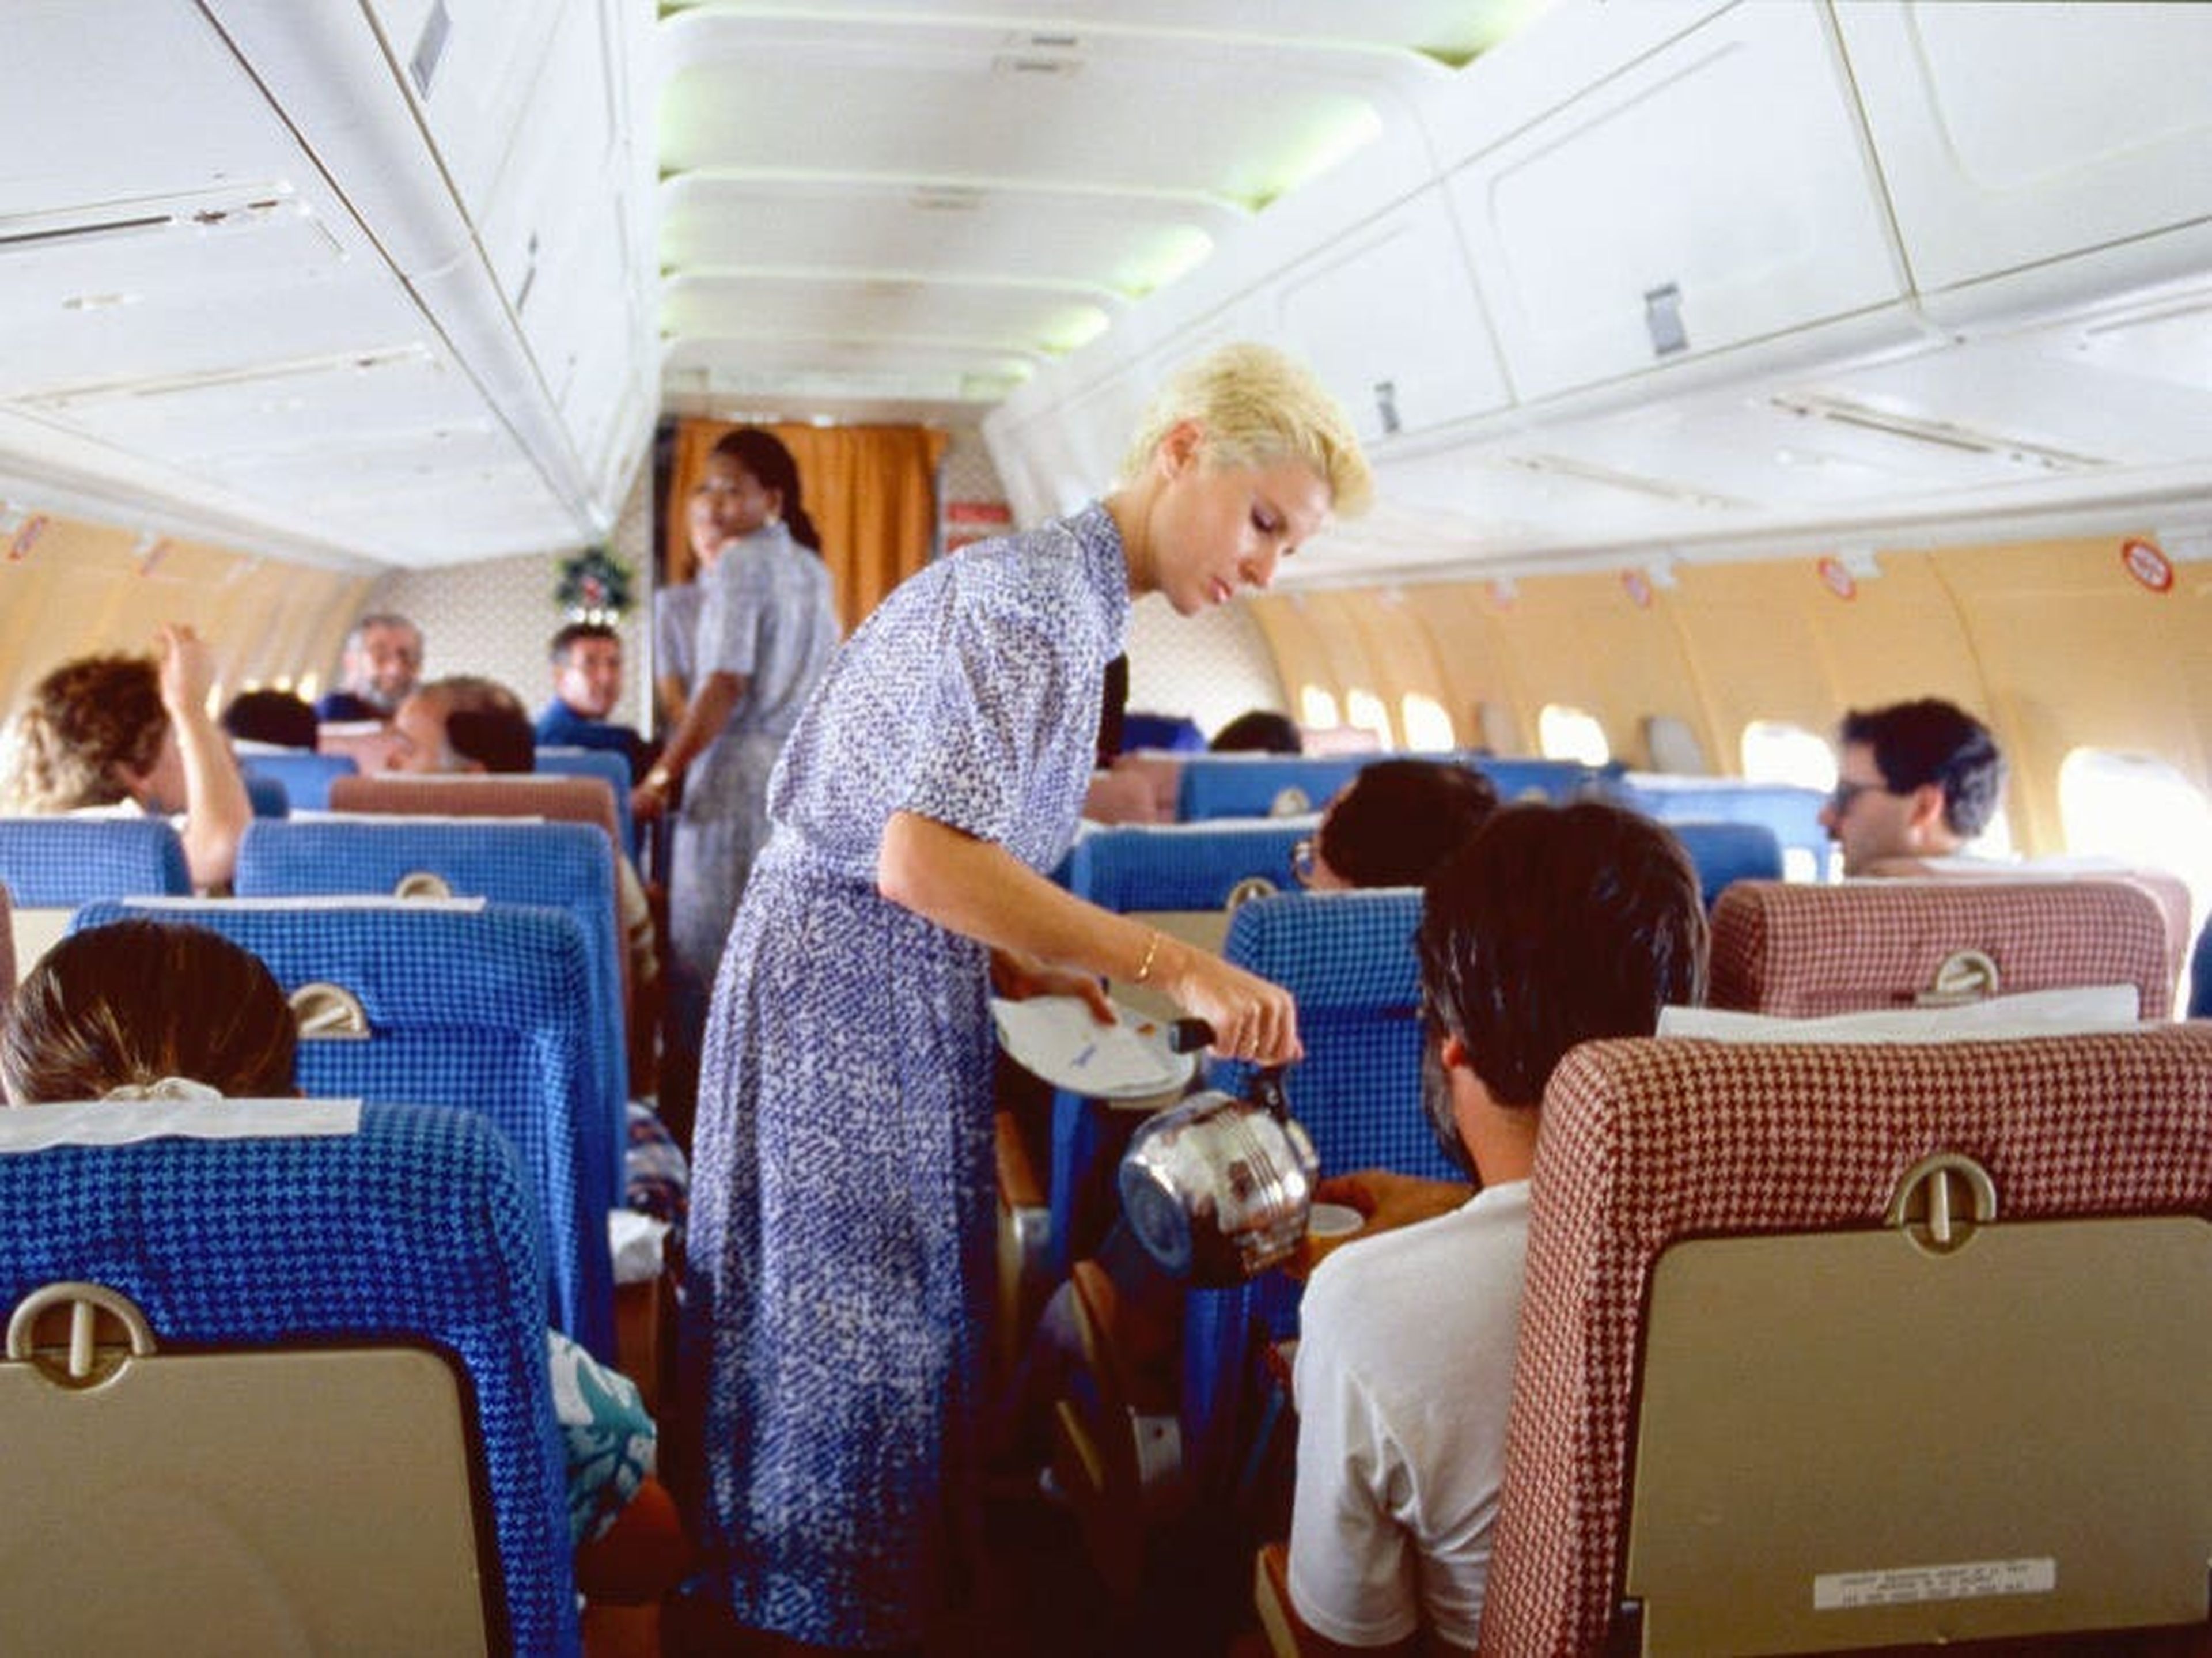 Auxiliares de vuelo en 1986, en un avión que viajaba de Madrid a Barcelona.